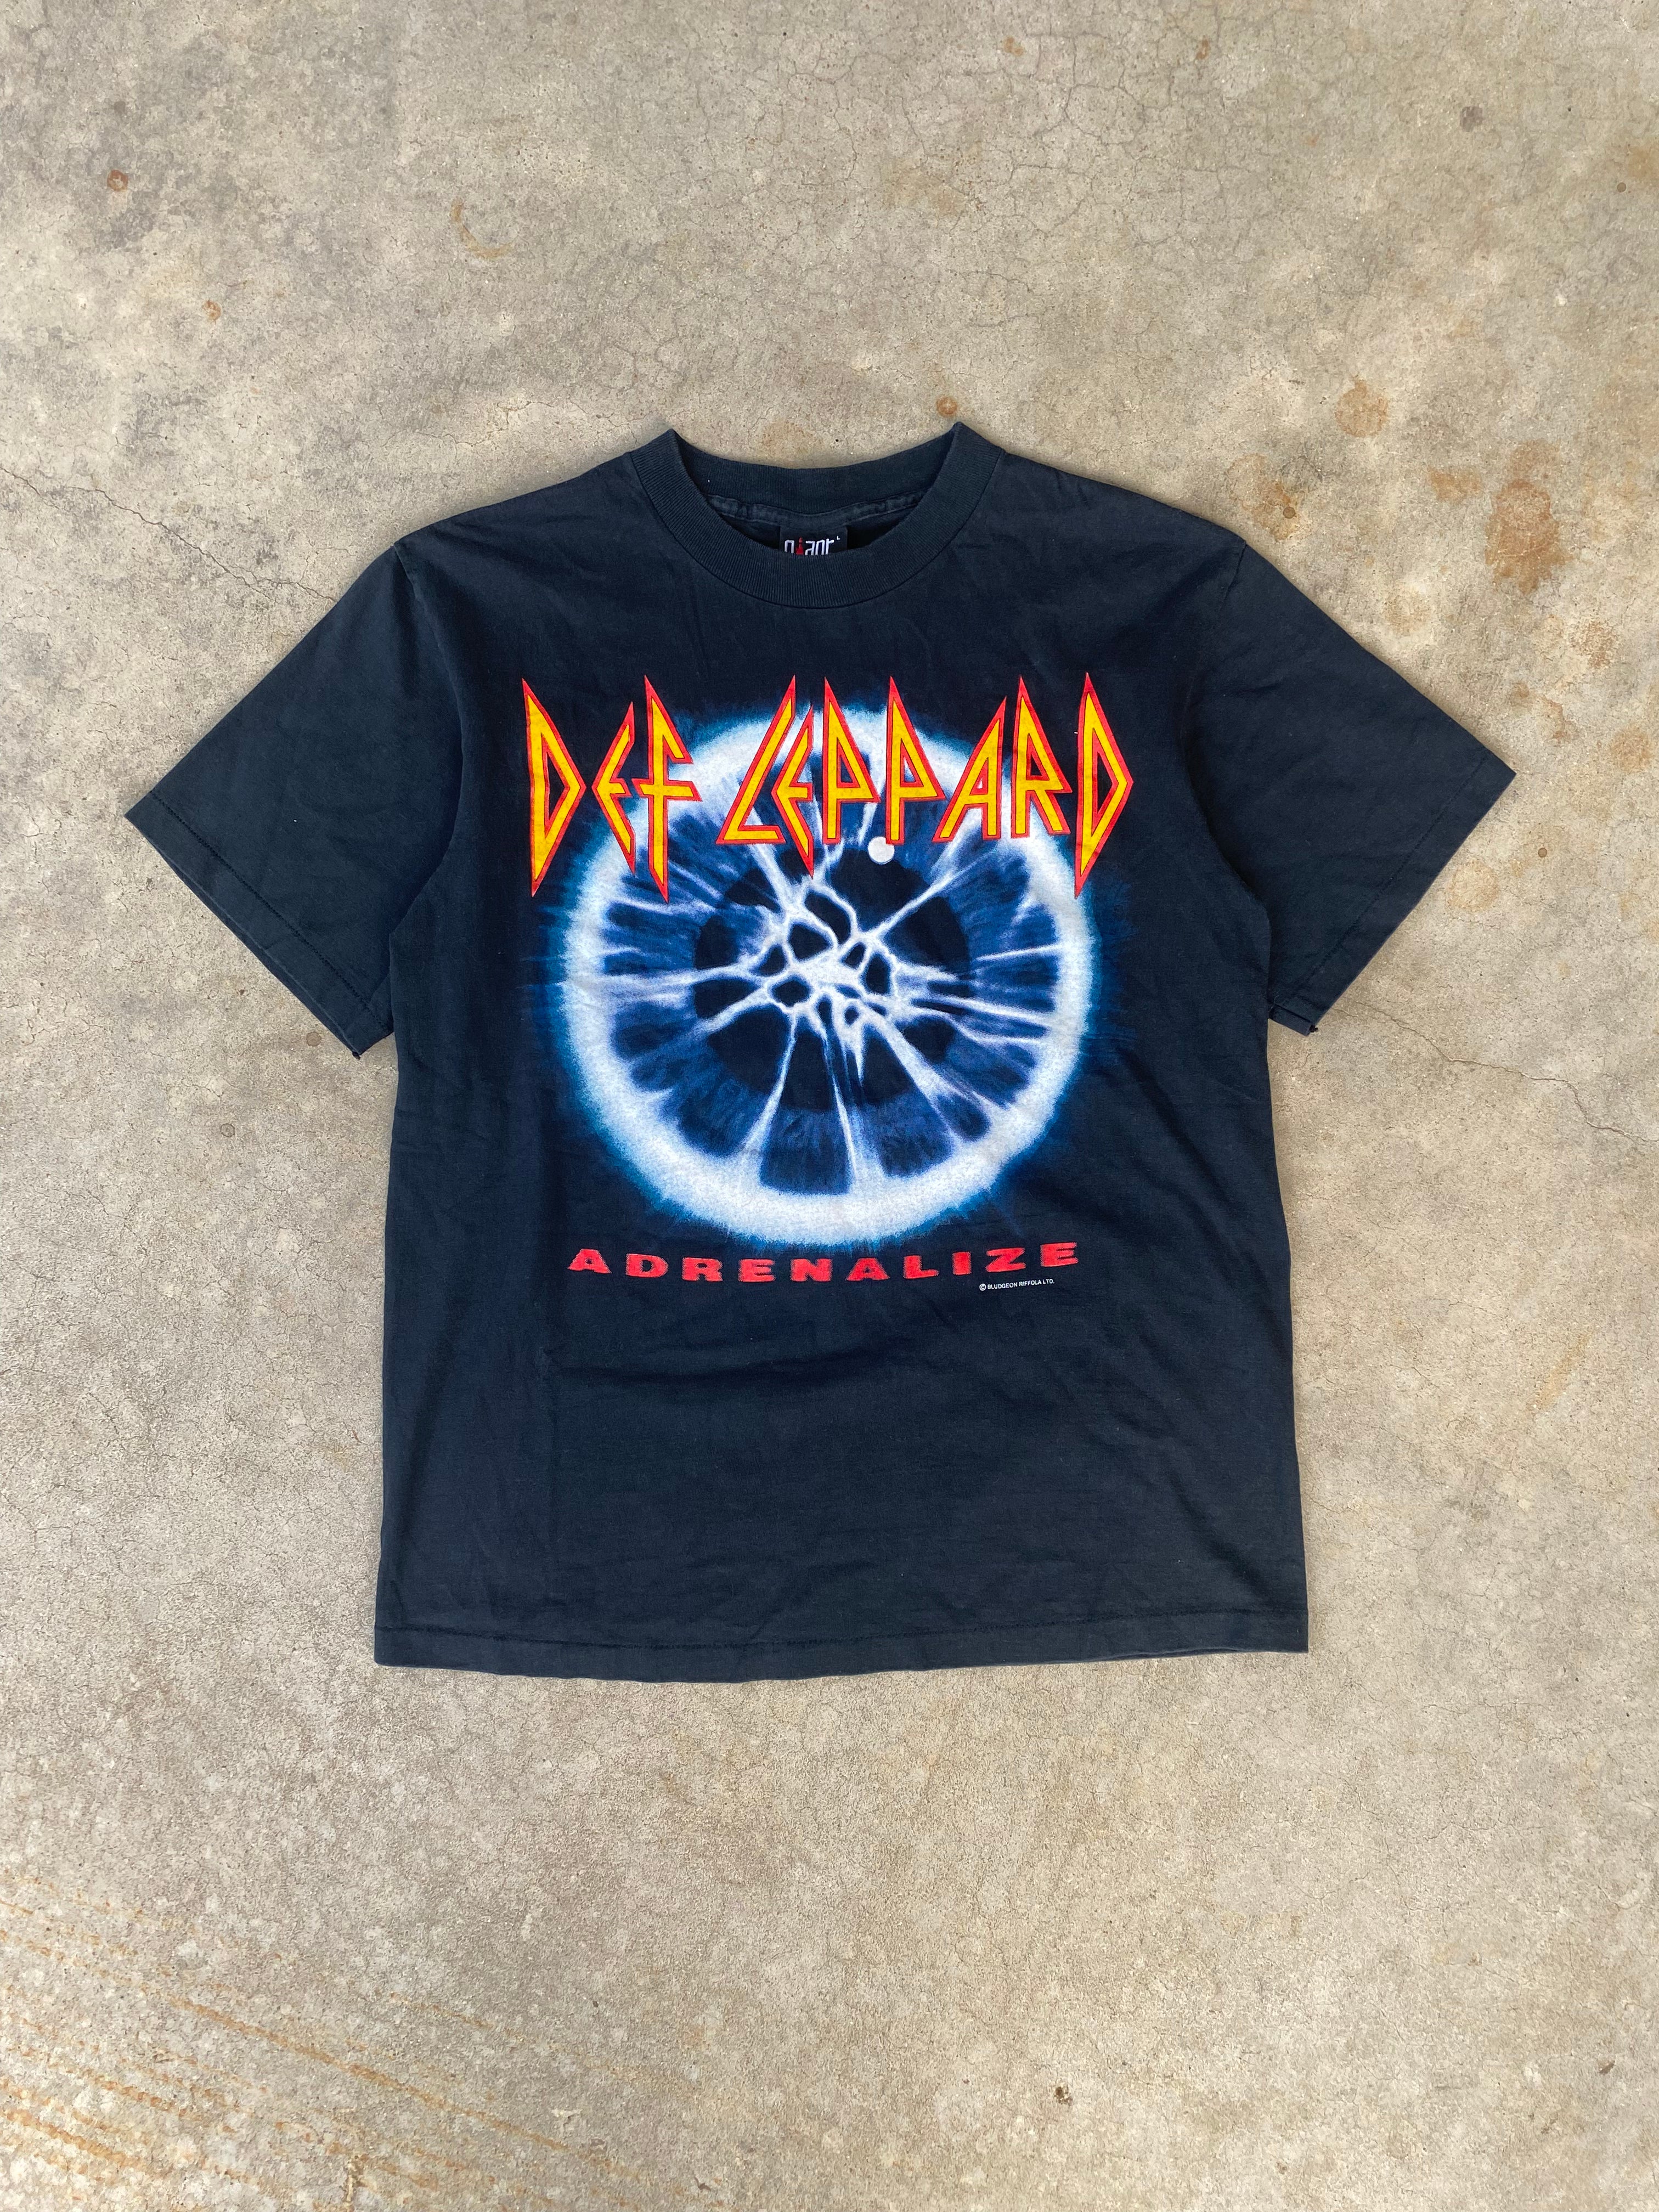 1990s Def Leppard Adrenalize Tour T-Shirt (M)